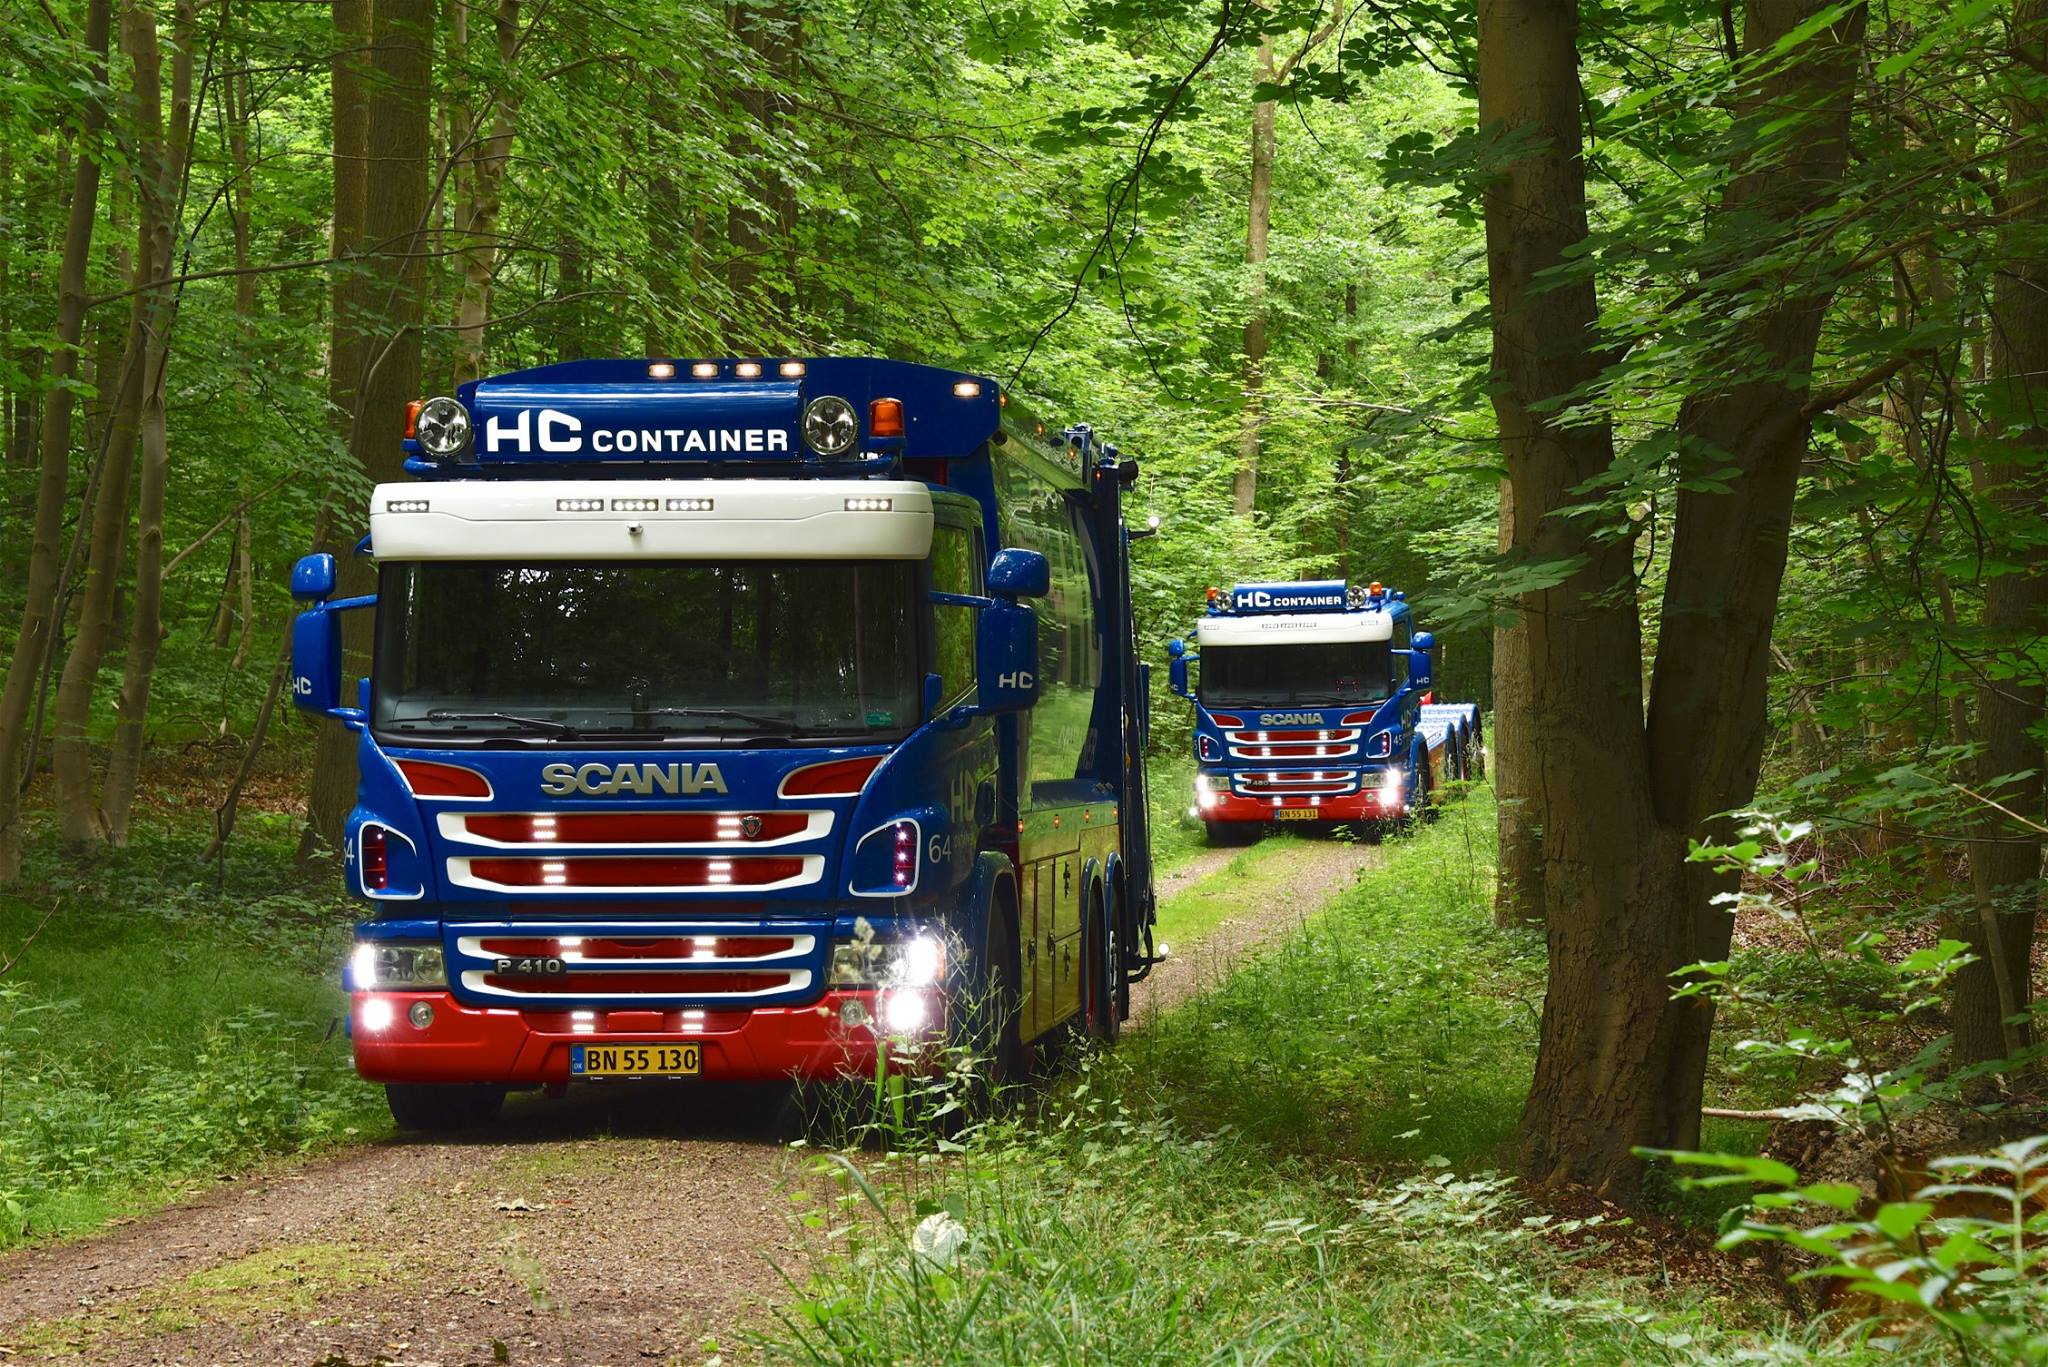 HC Containers biler kan altid kendes på det flotte blå og røde design